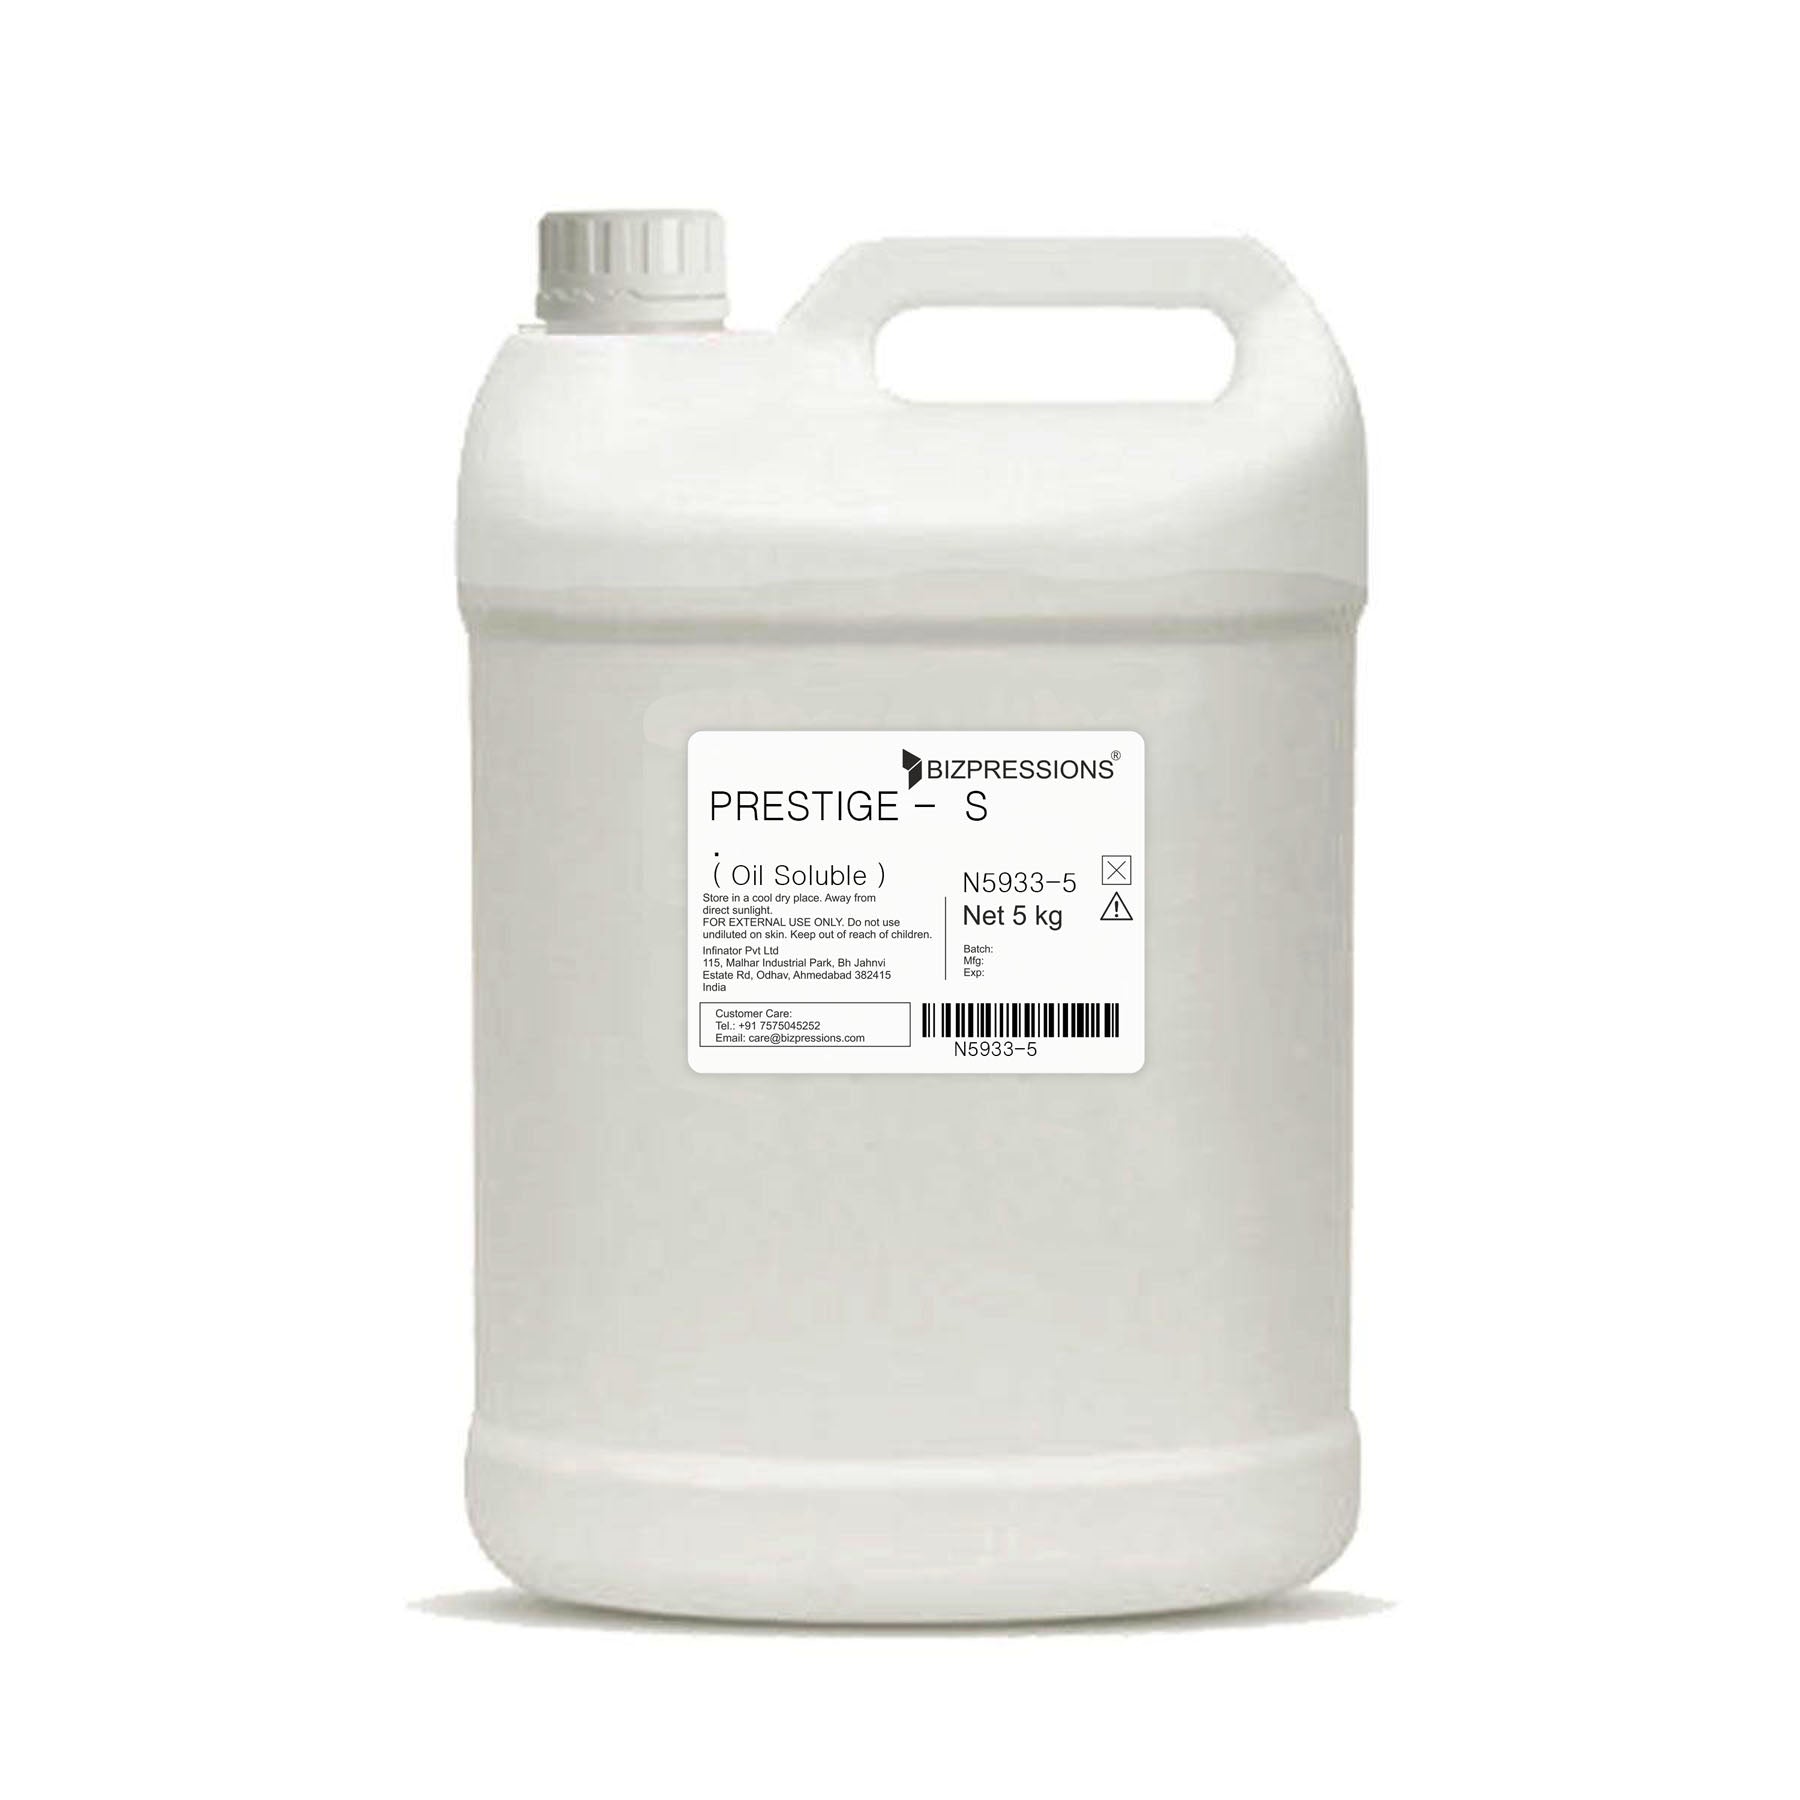 PRESTIGE - S - Fragrance ( Oil Soluble ) - 5 kg